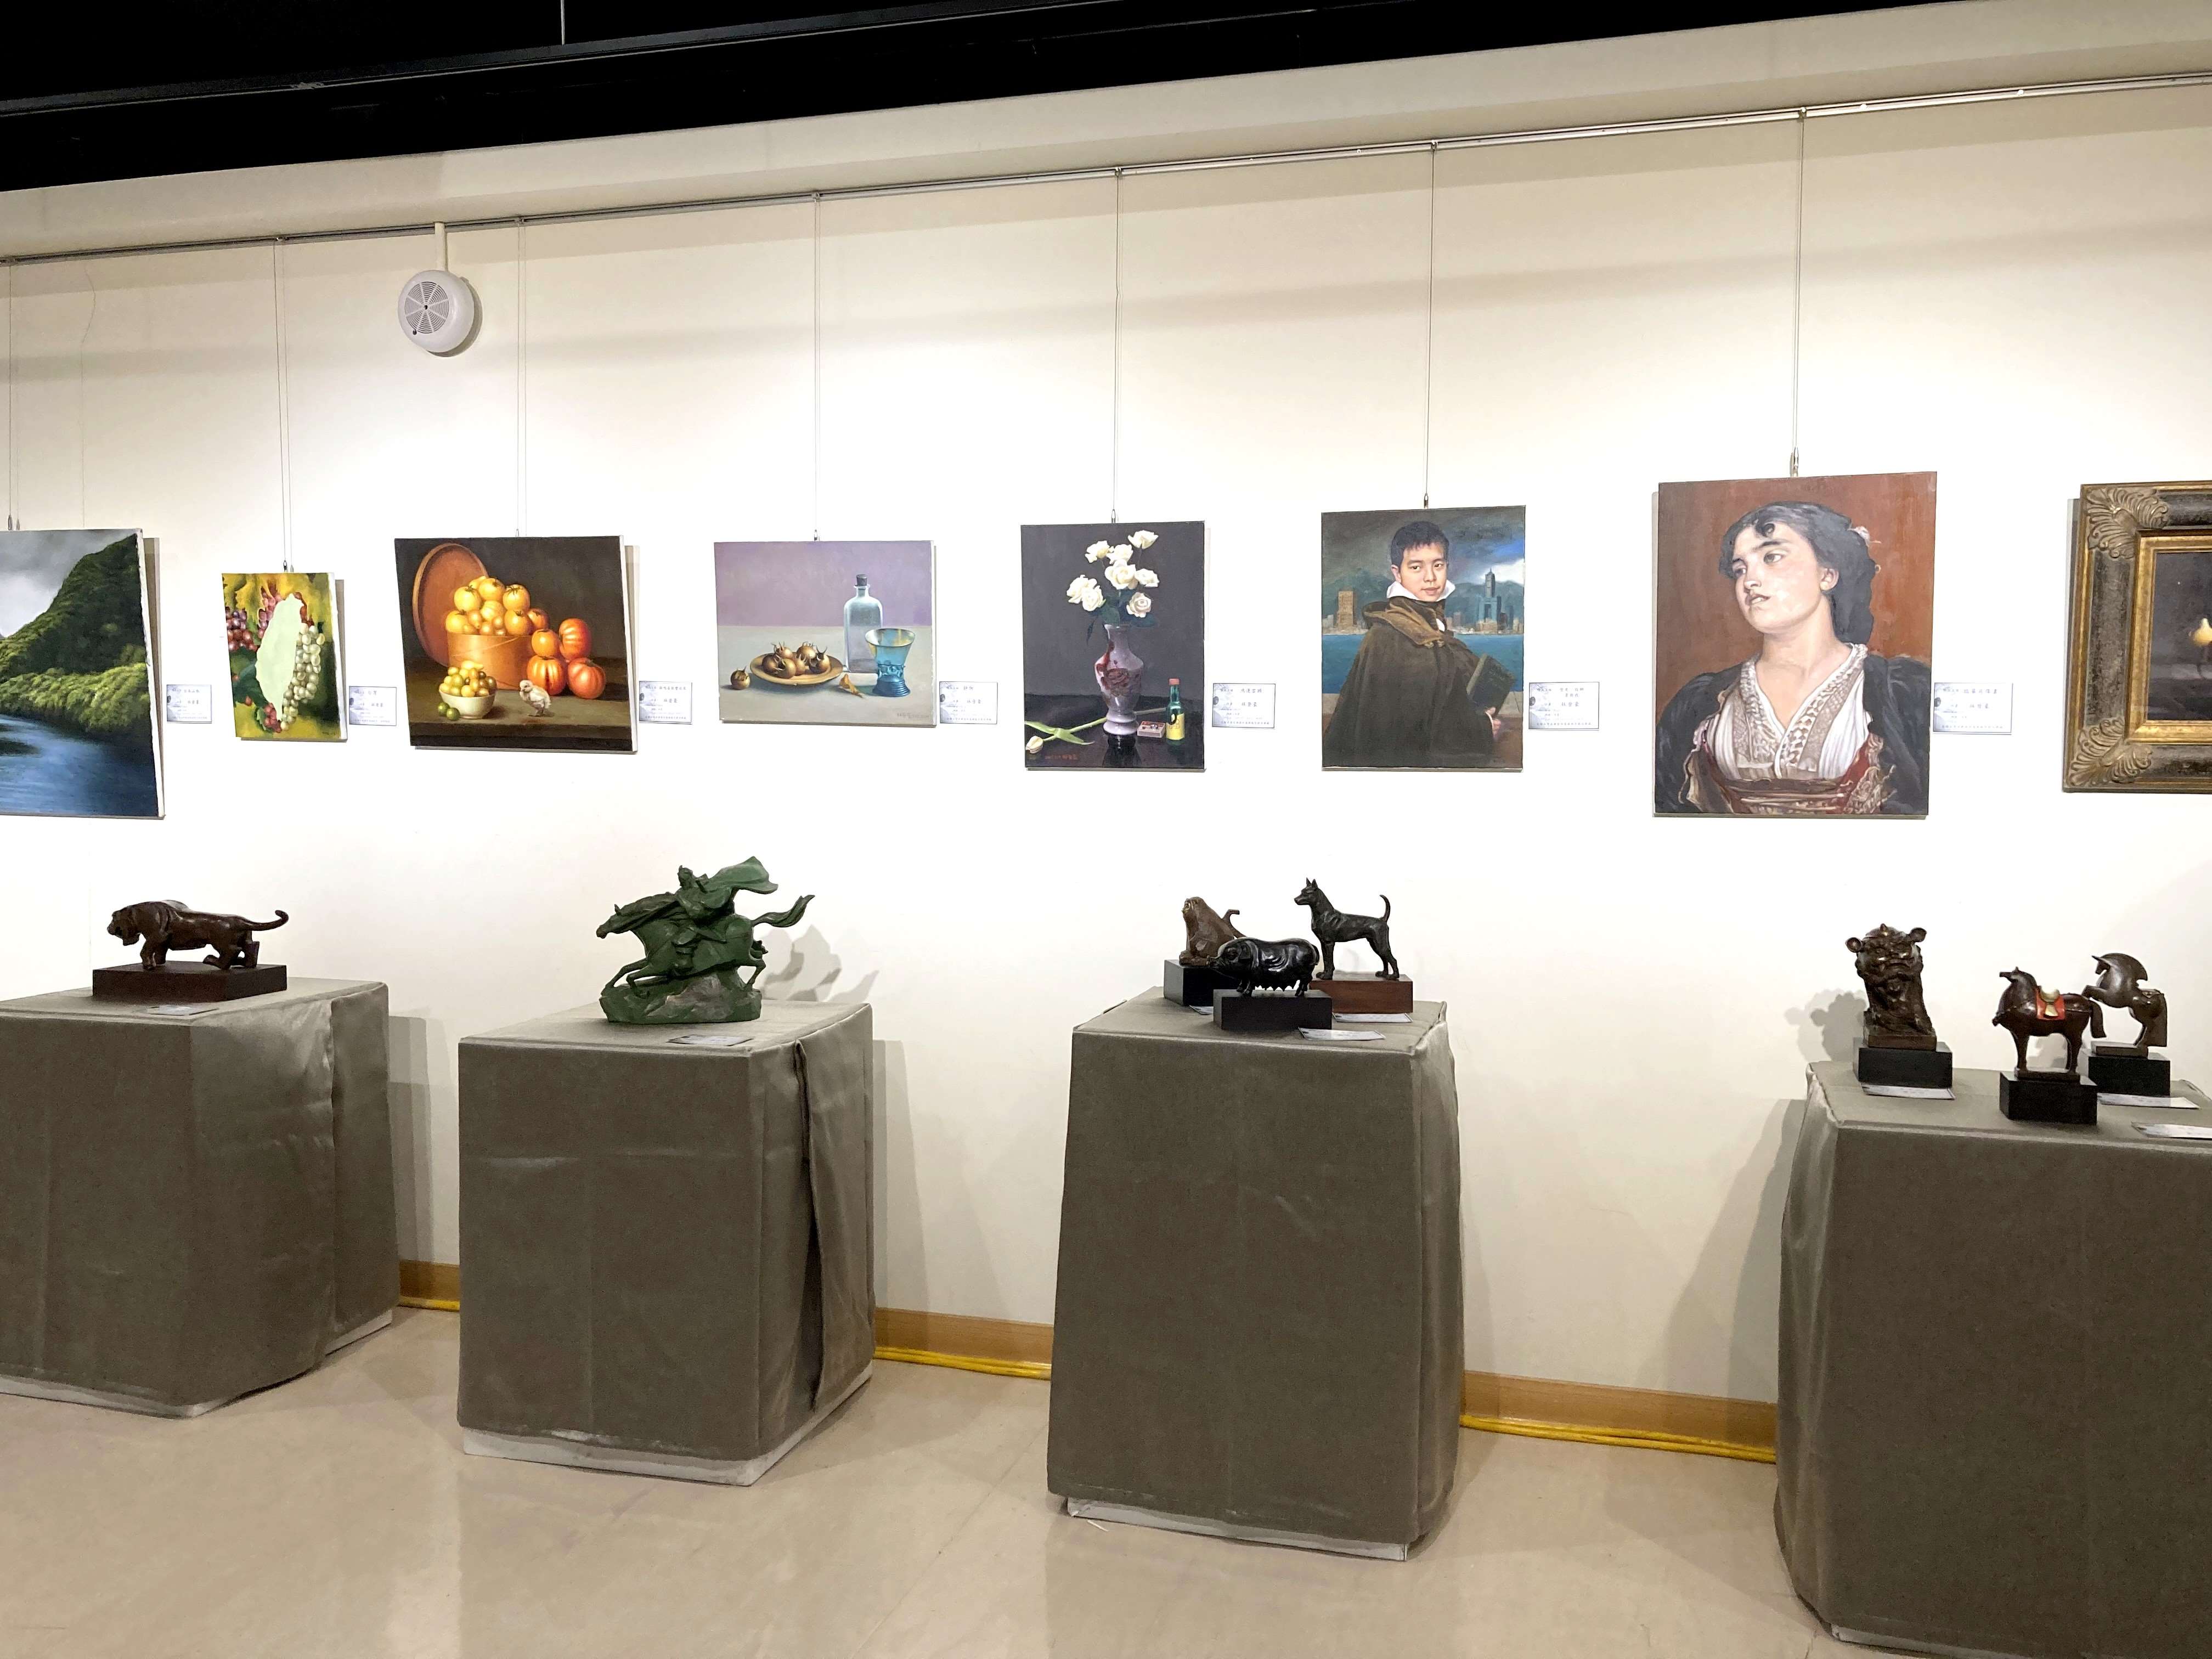 支持台灣古典藝術教育  四位藝術家舉辦義賣聯展